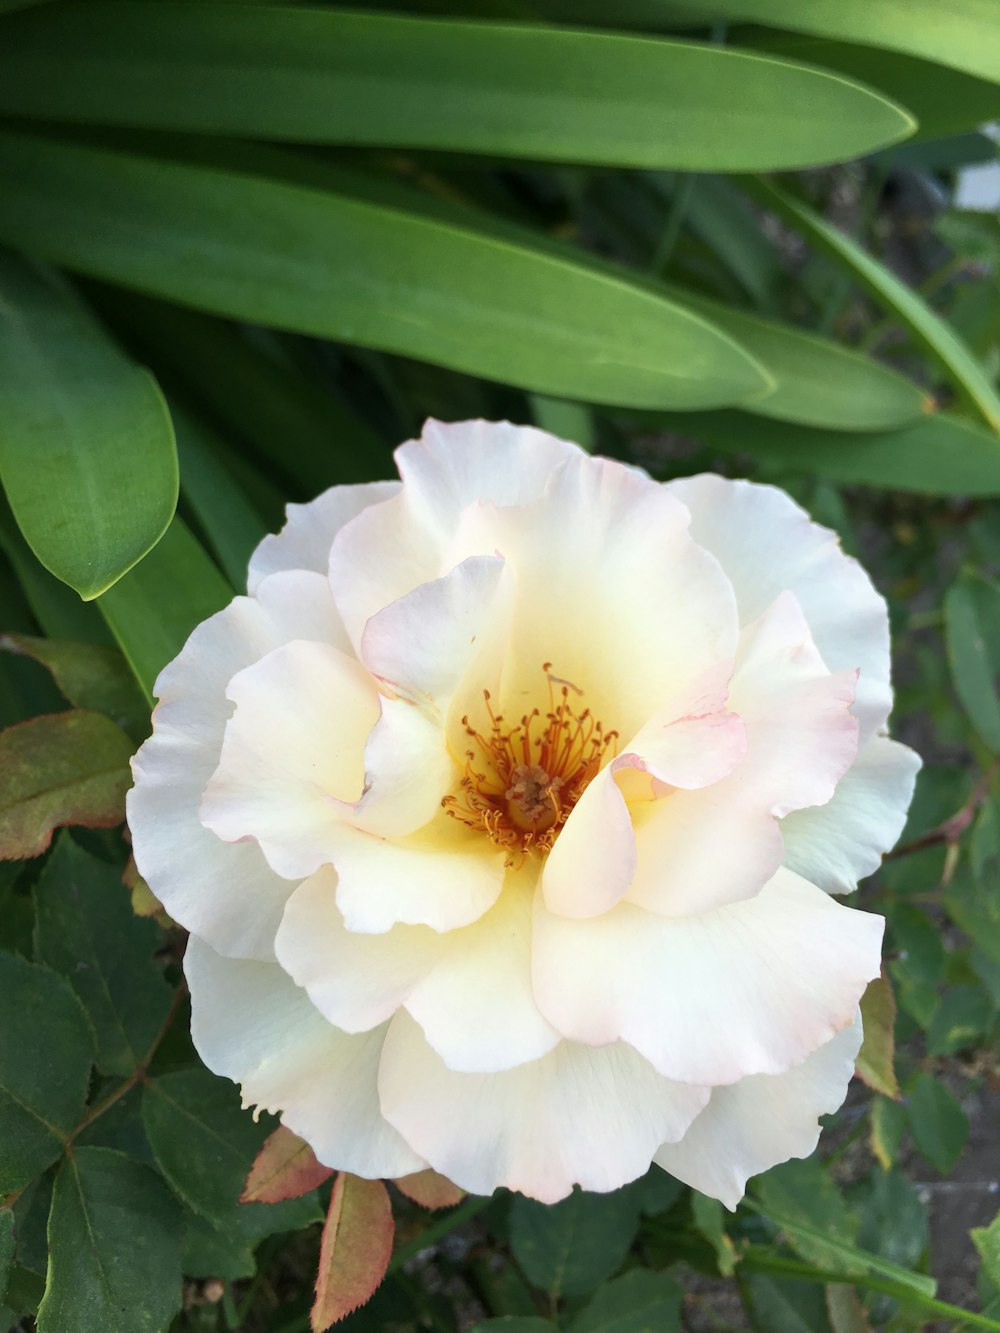 1 white petaled flower